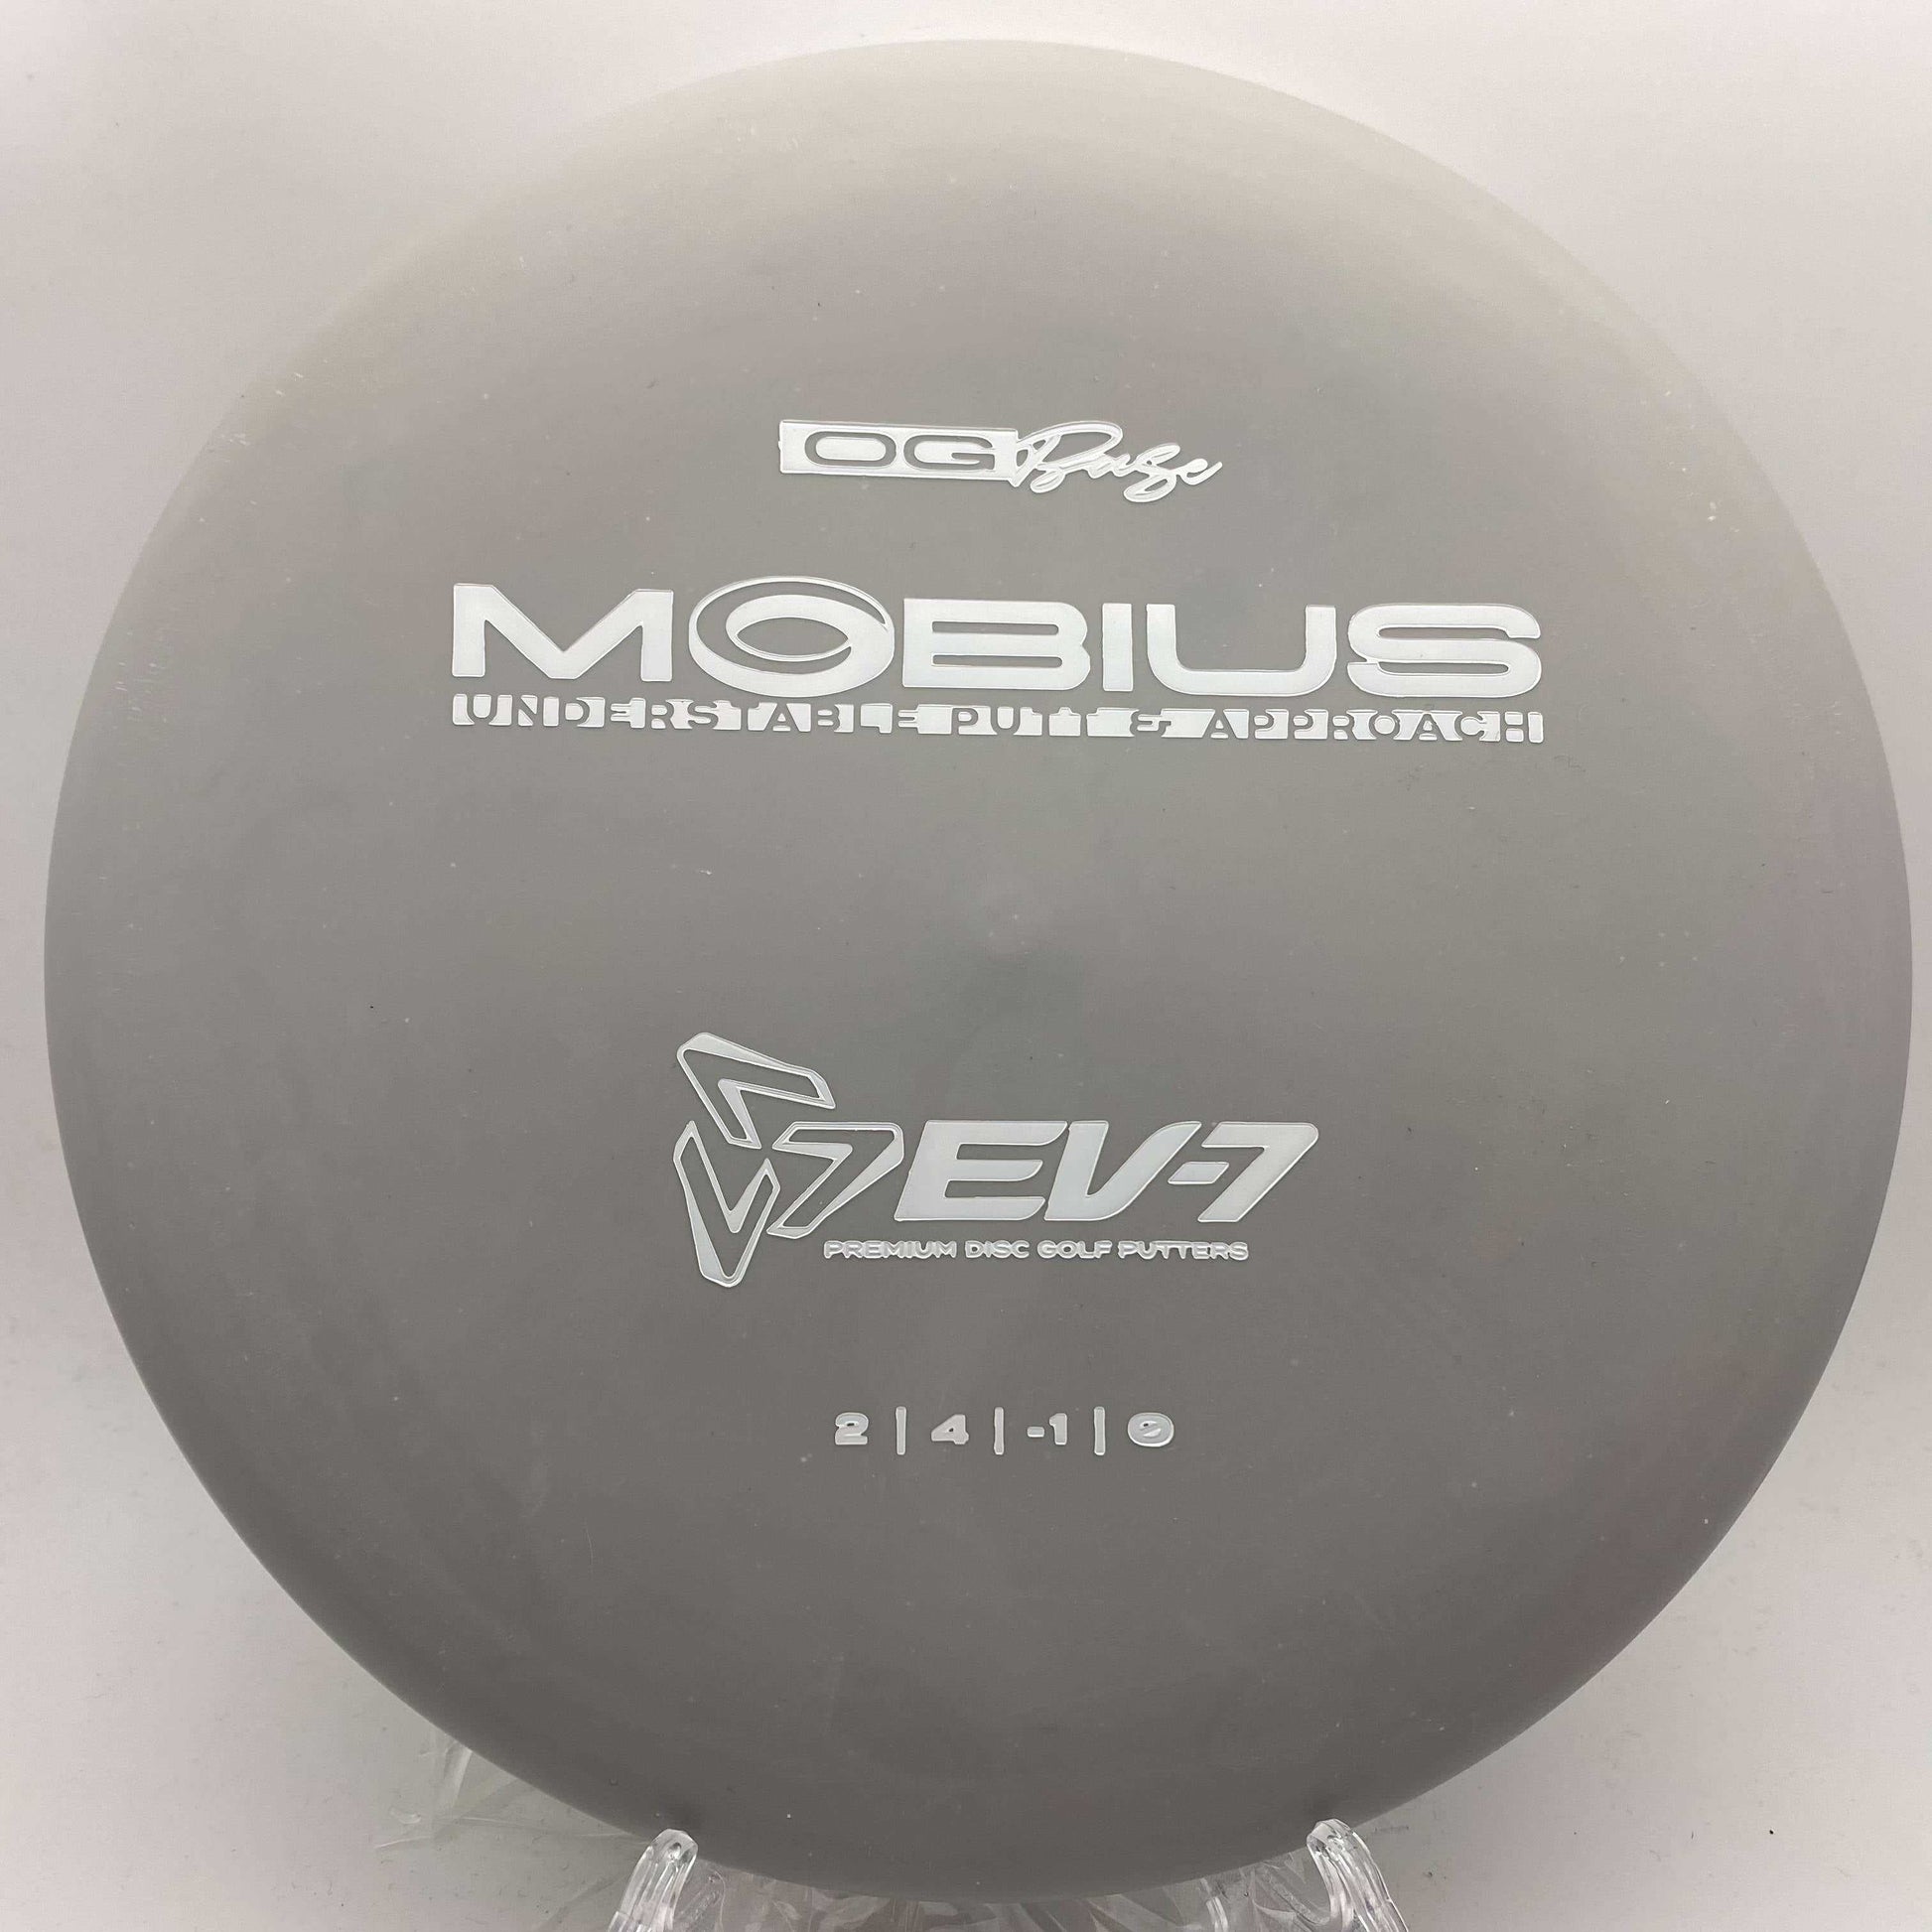 EV-7 Mobius - Disc Golf Deals USA